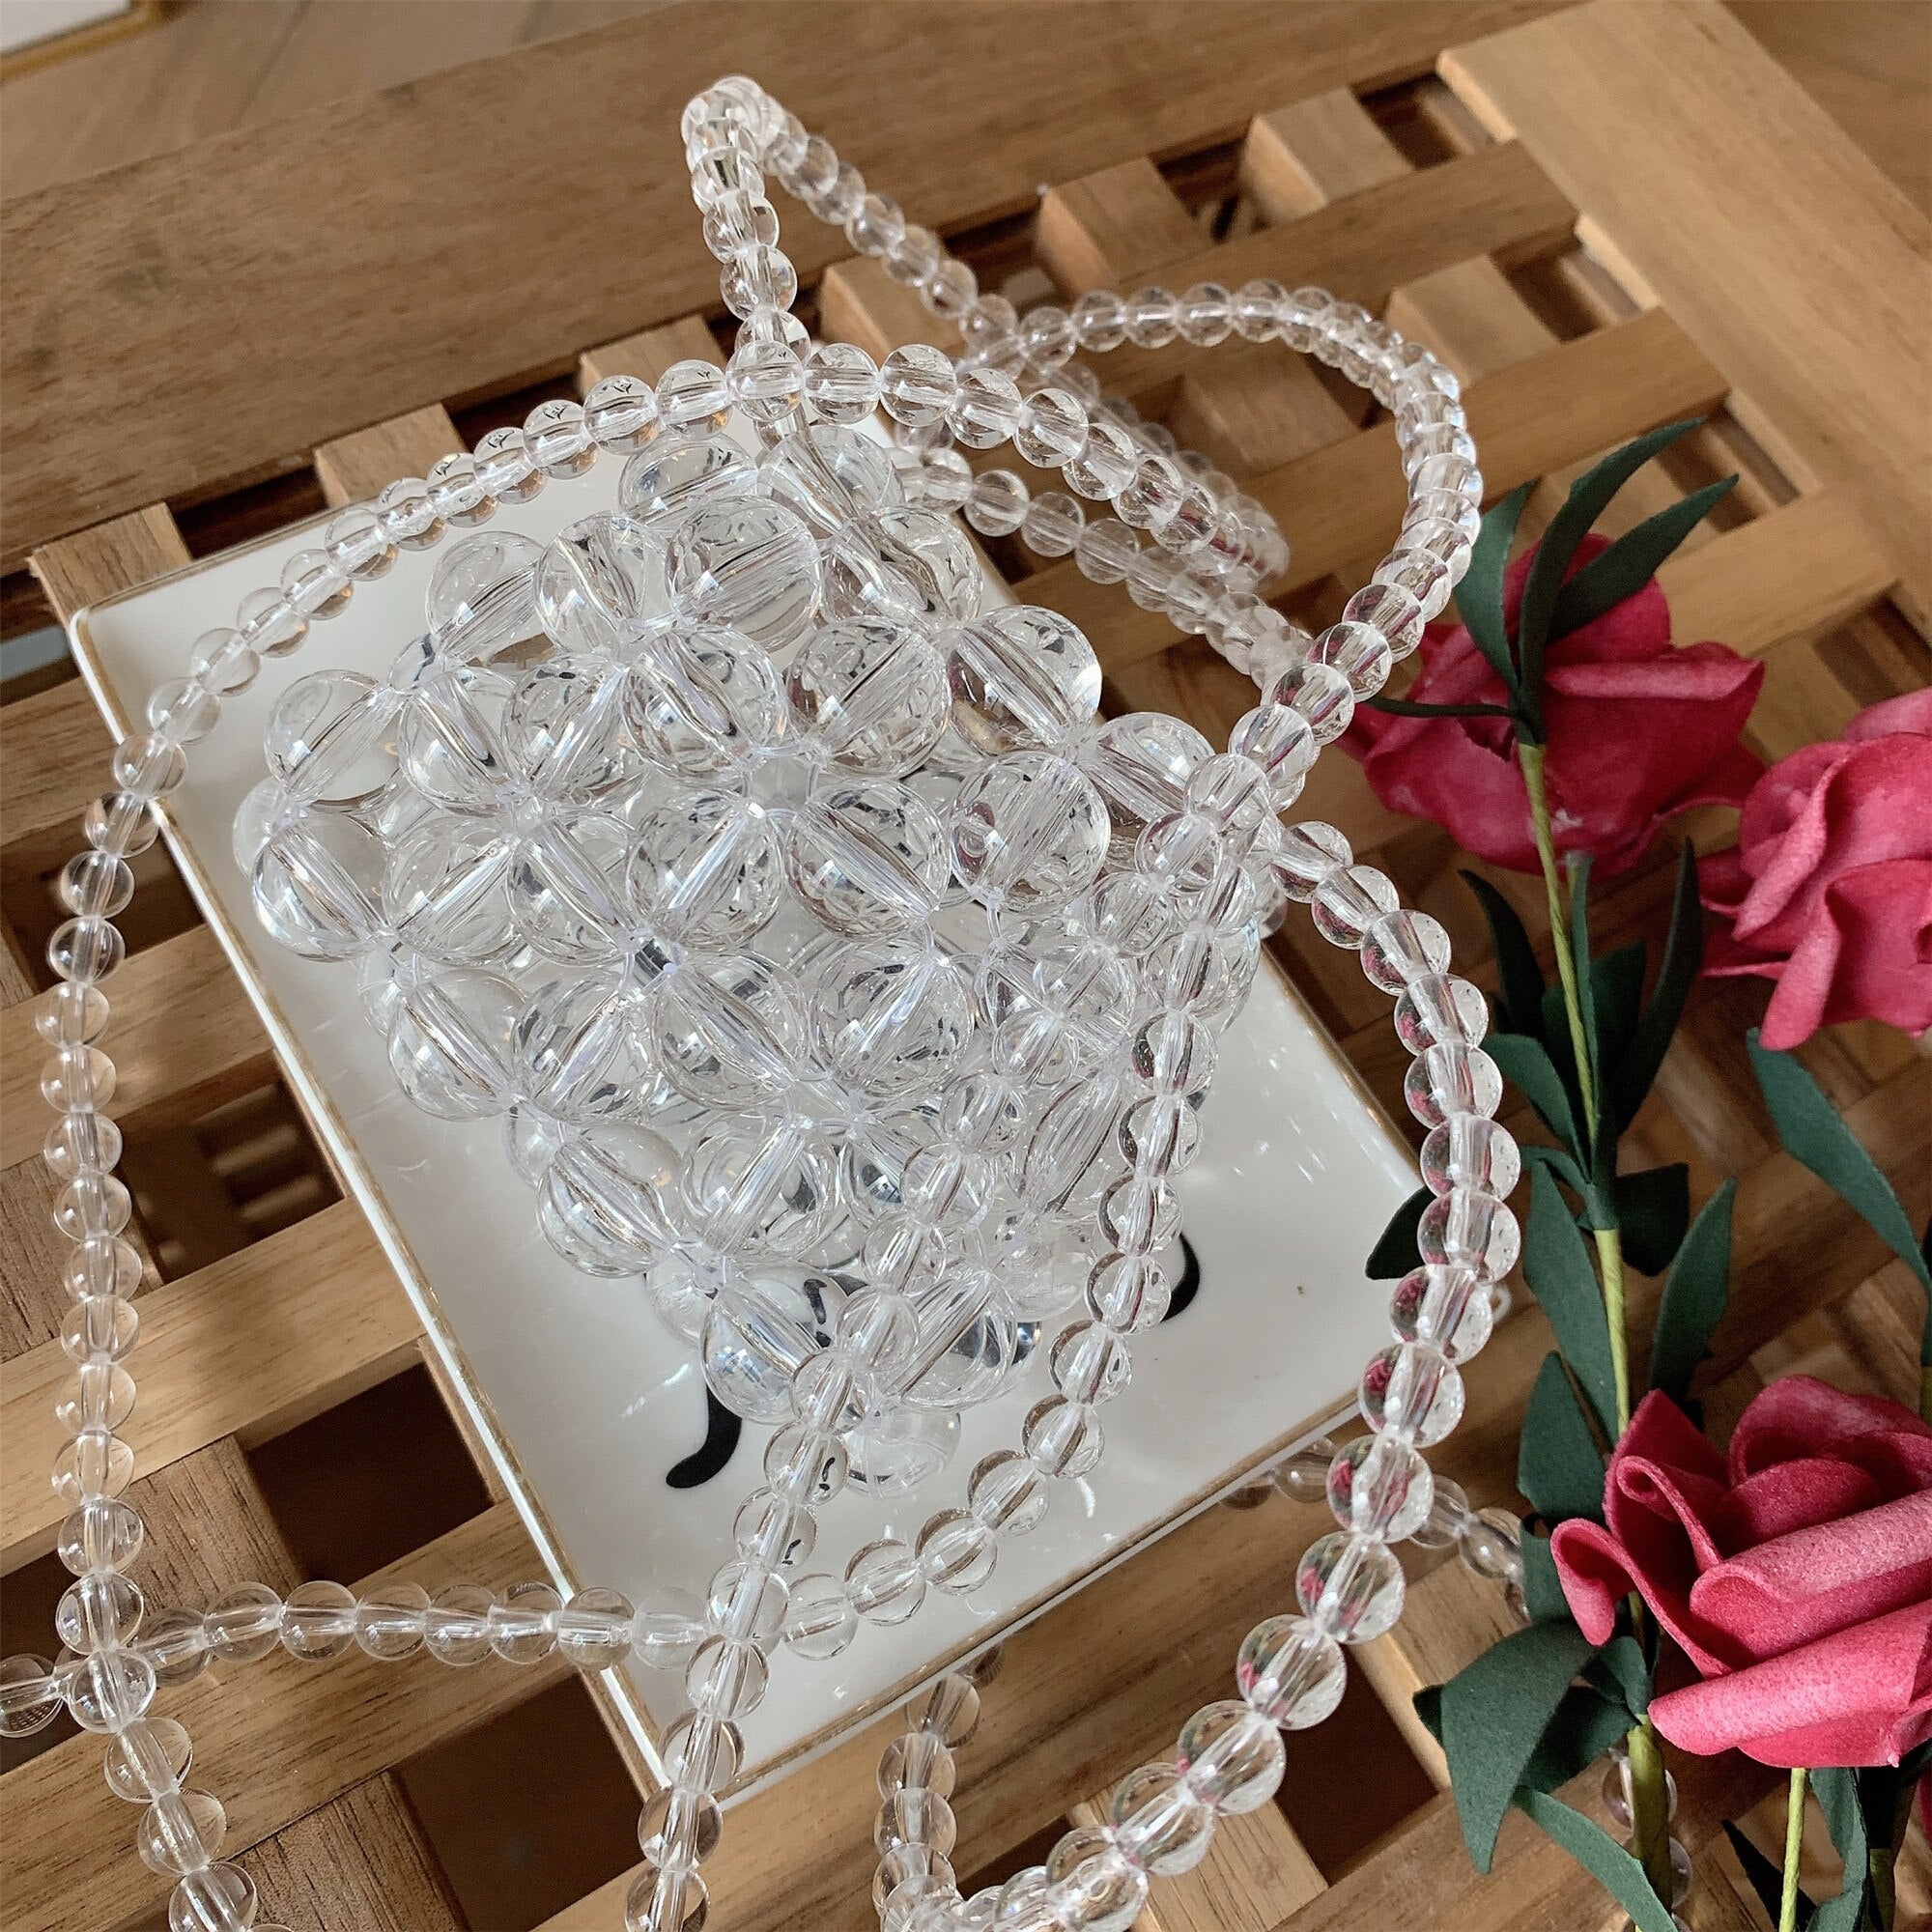 Luxury Mini Pearl Bag